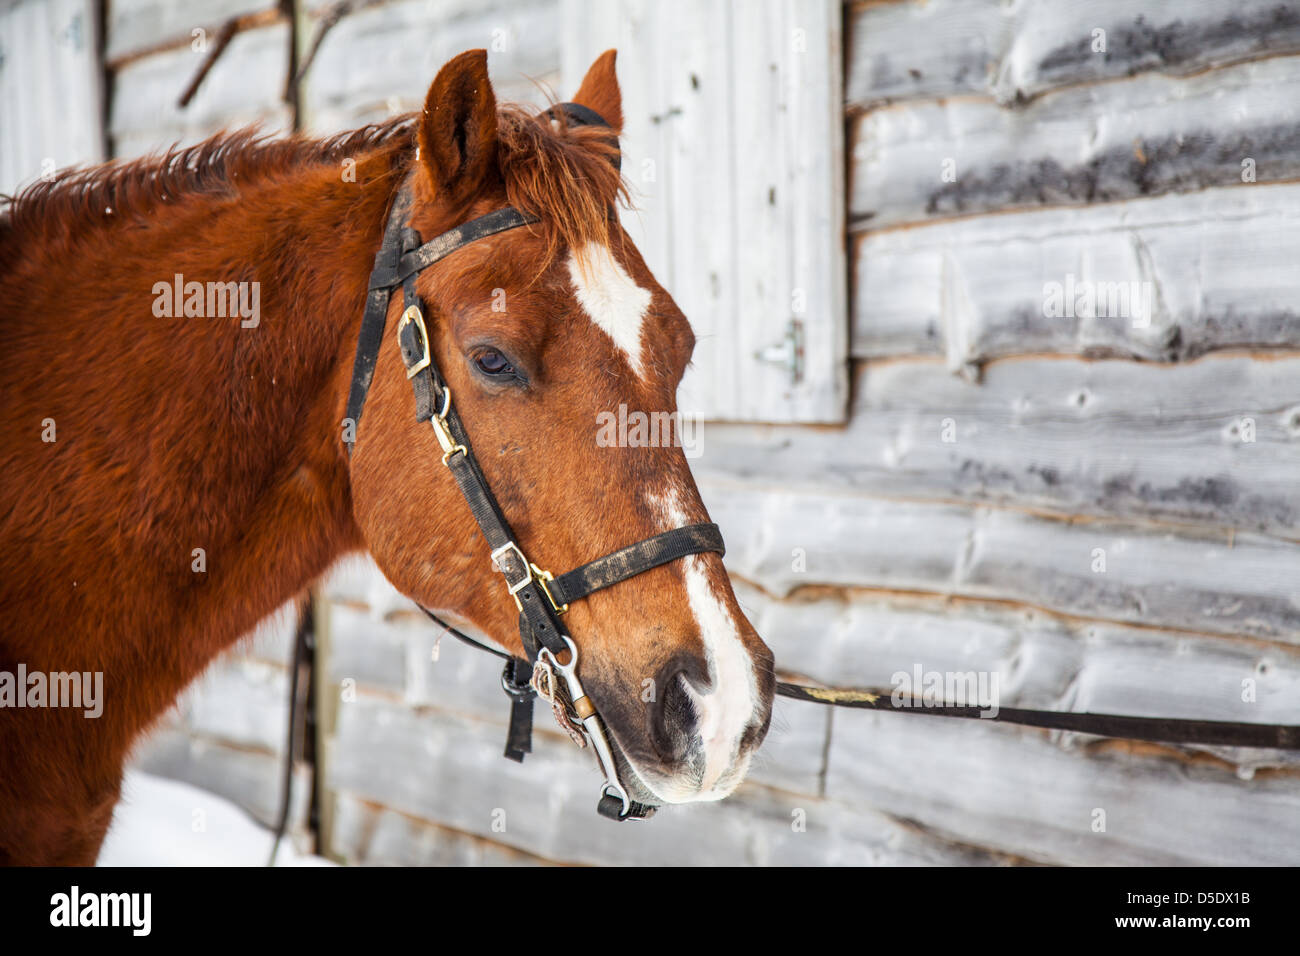 Un cheval avec mors est à côté d'une grange prête à être écurie après un trajet en hiver. Snowshoe, WV Banque D'Images